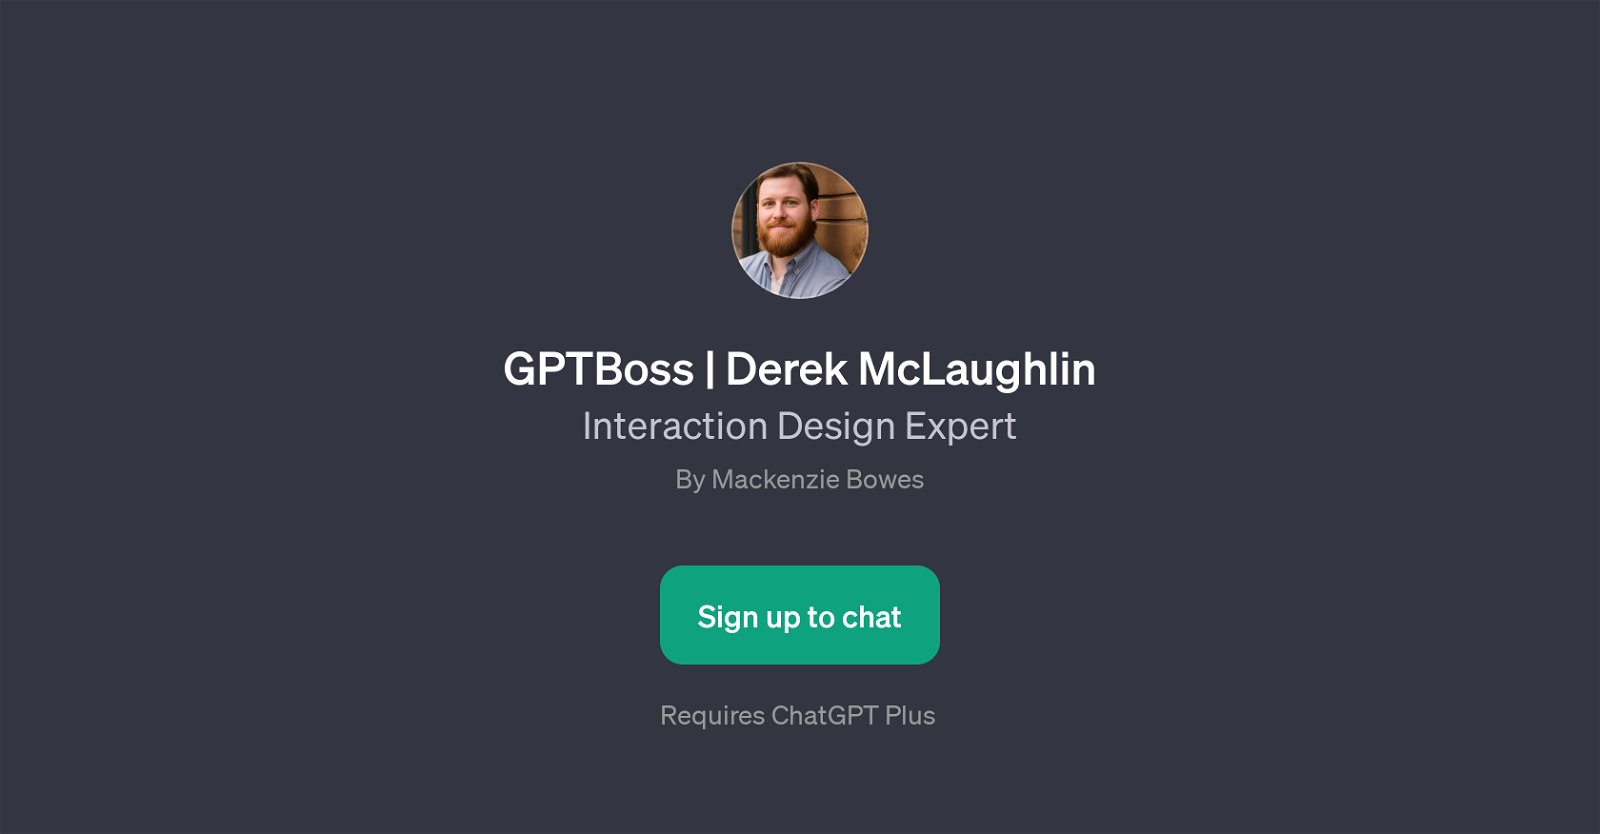 GPTBoss | Derek McLaughlin website